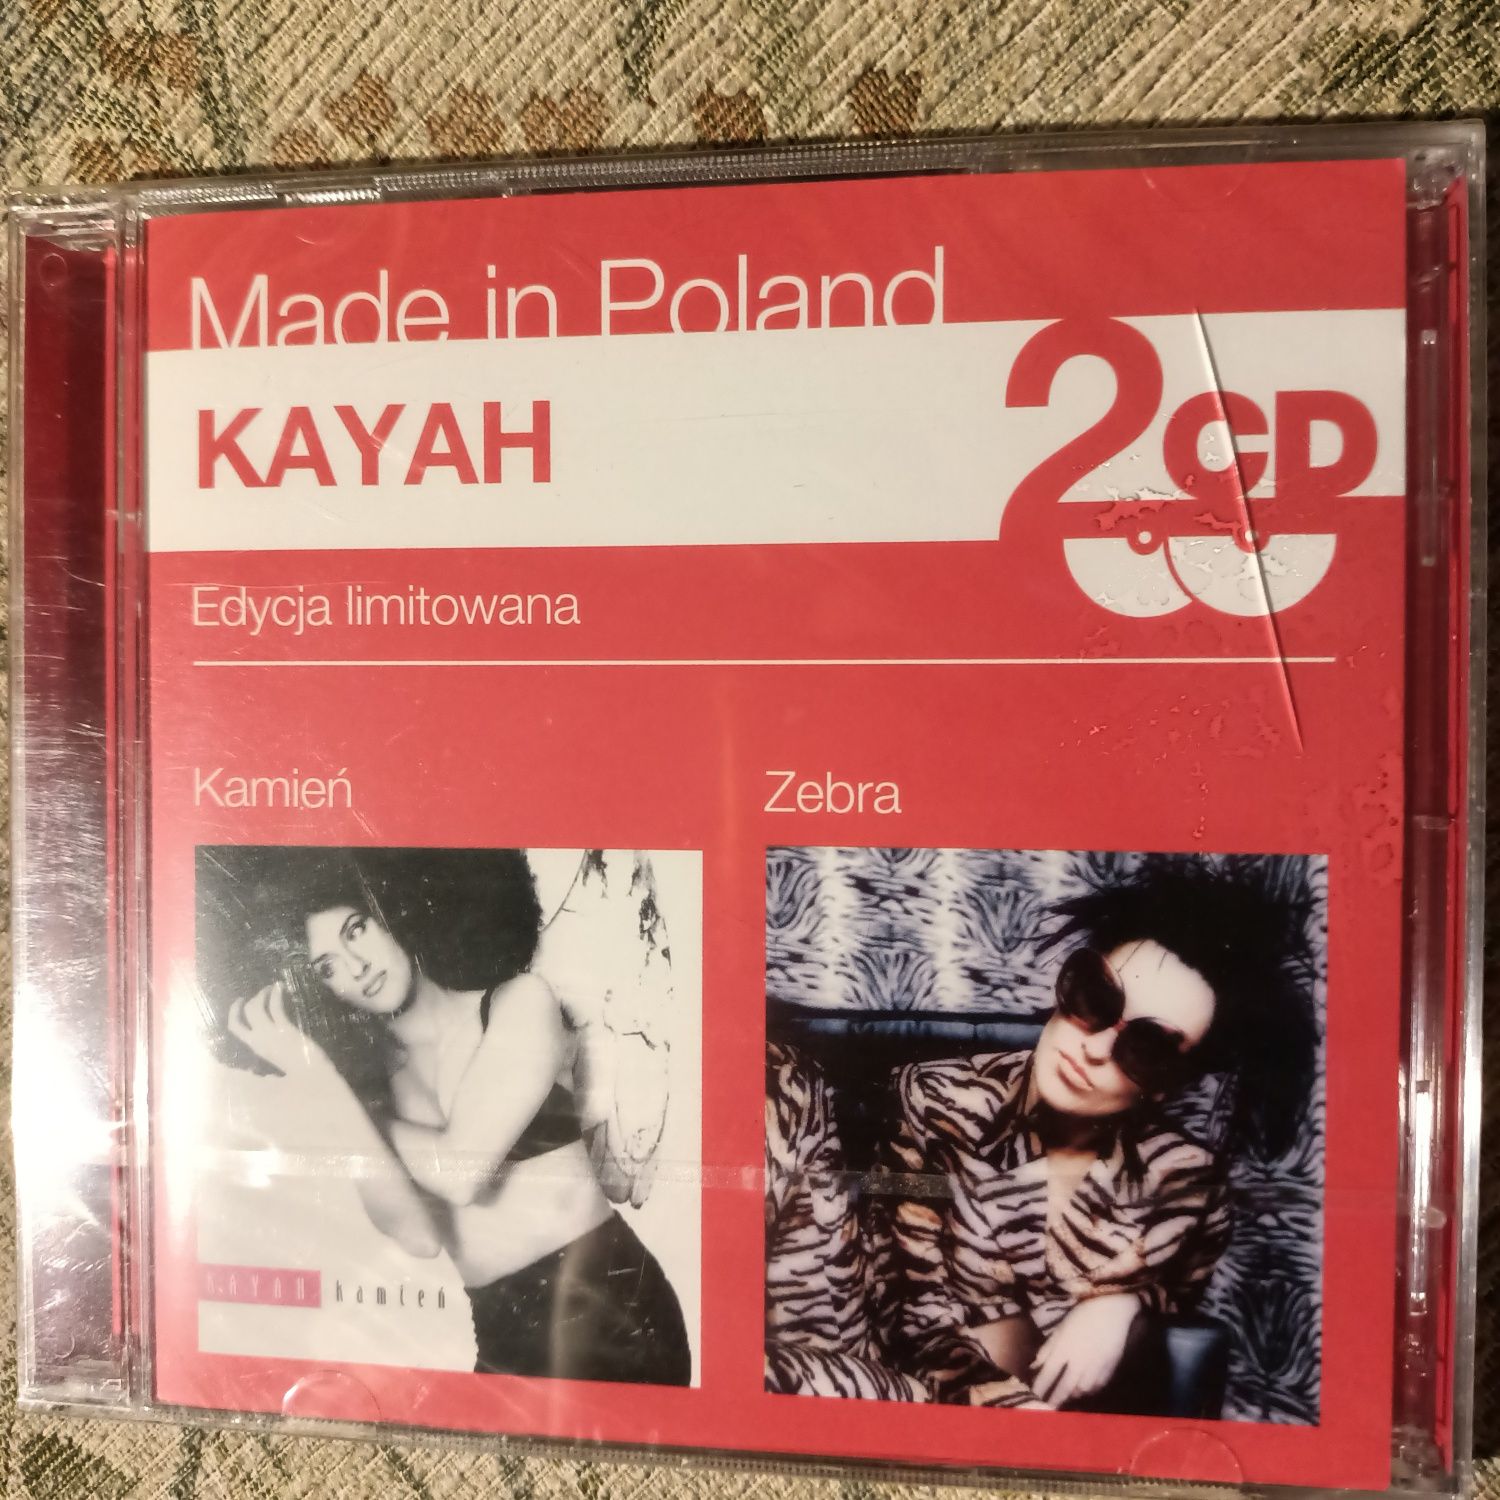 Taniej o 2zł 2CD Kayah - Kamień, Zebra Nowe Folia Jewel Case uszkodzon